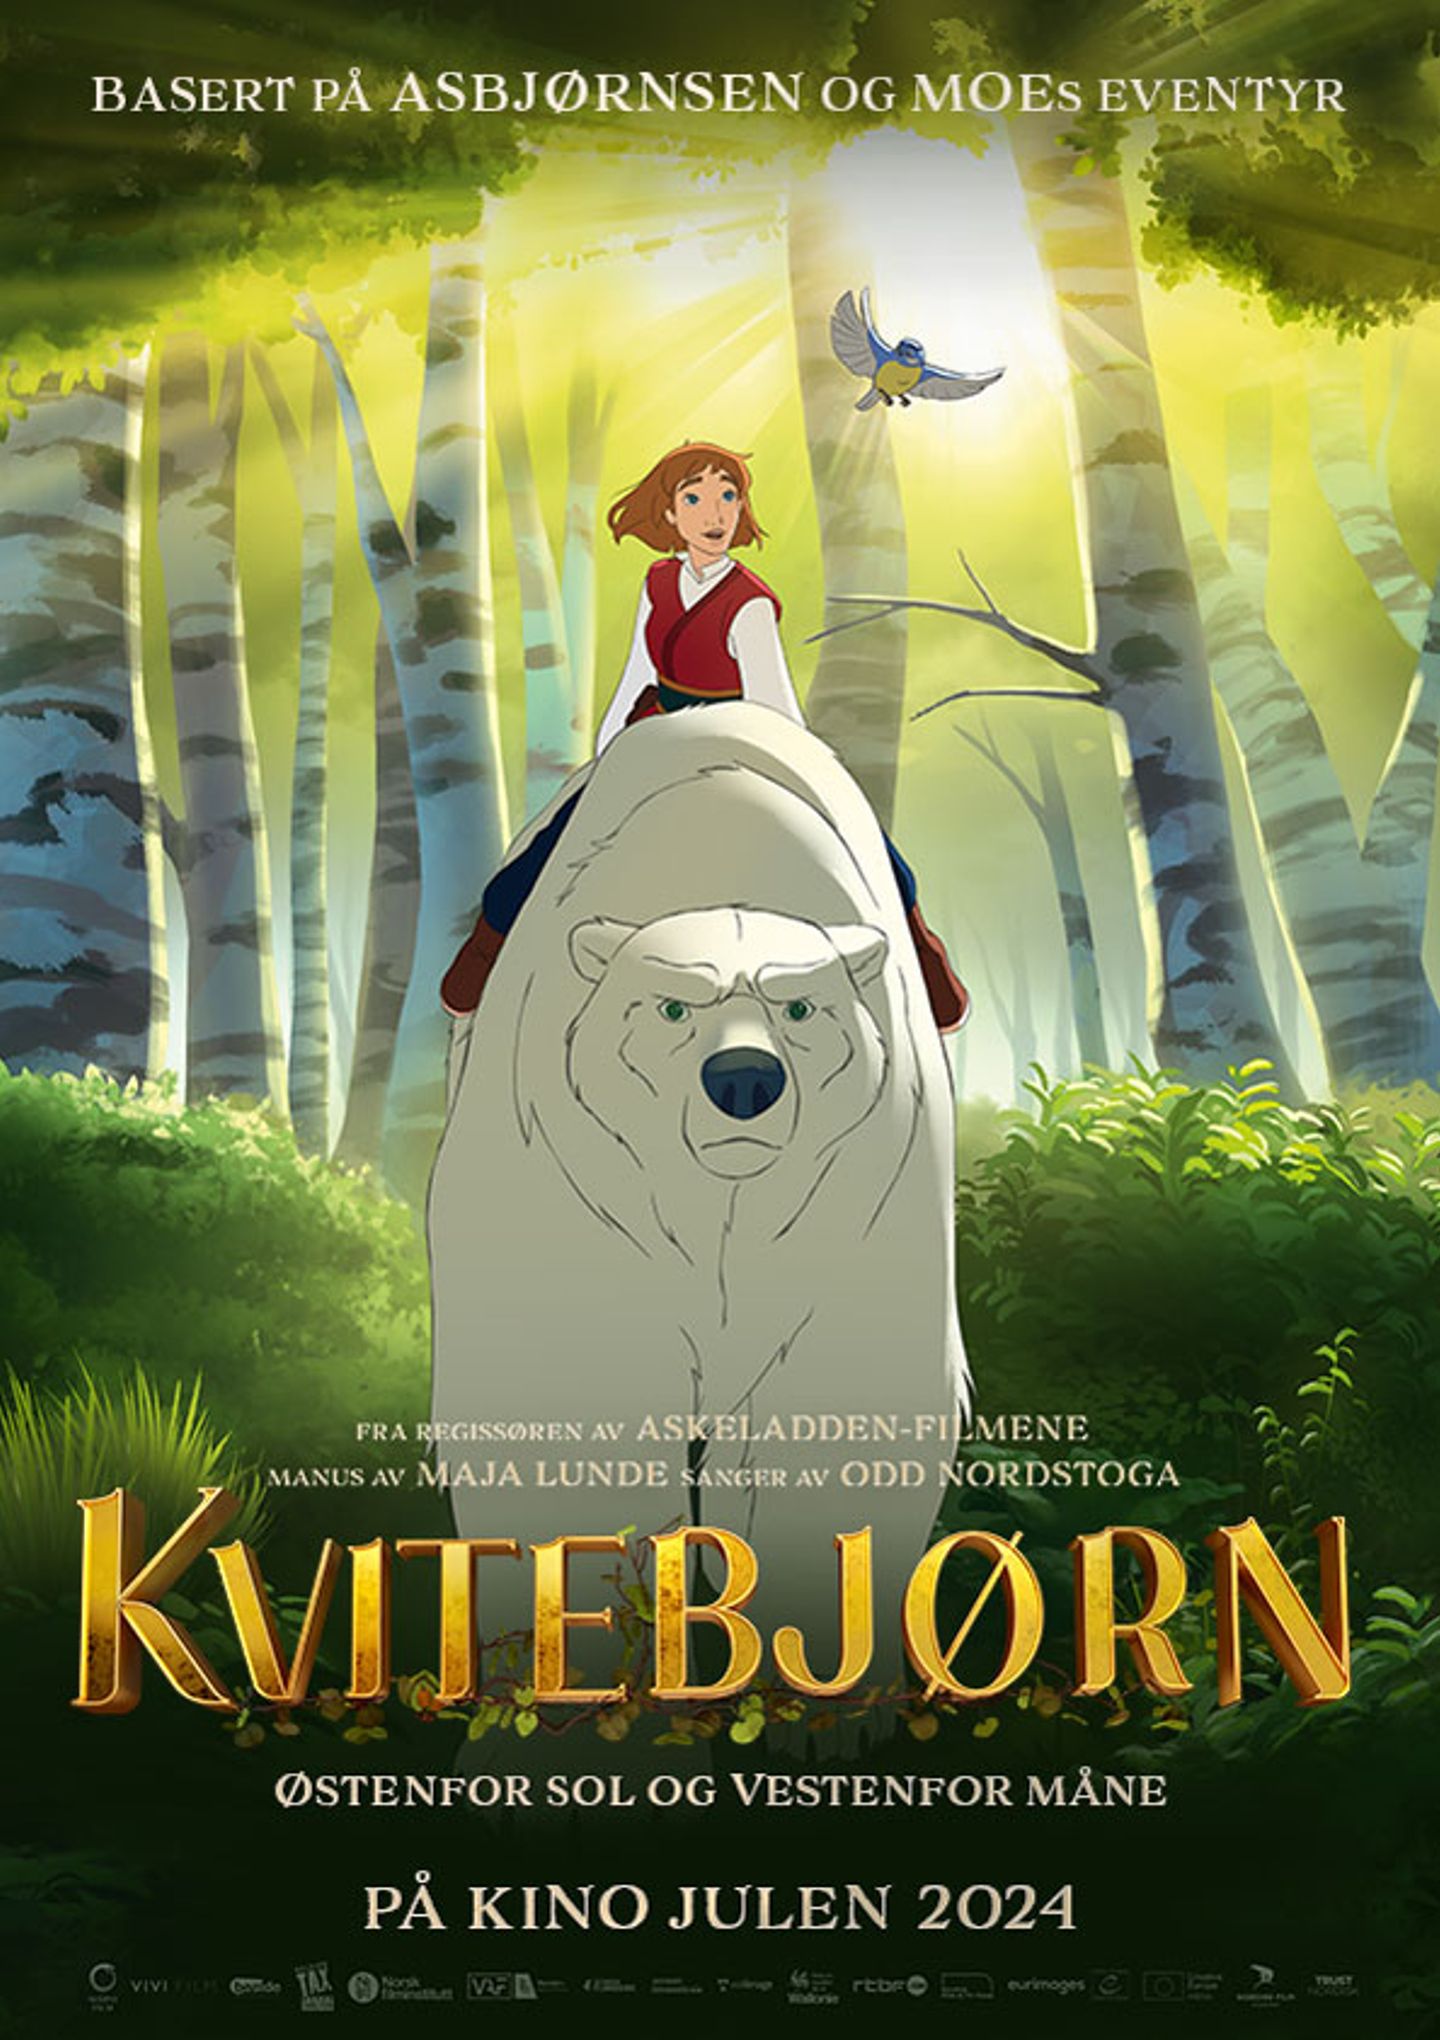 Plakat for 'Kvitebjørn - Østenfor sol og vestenfor måne'